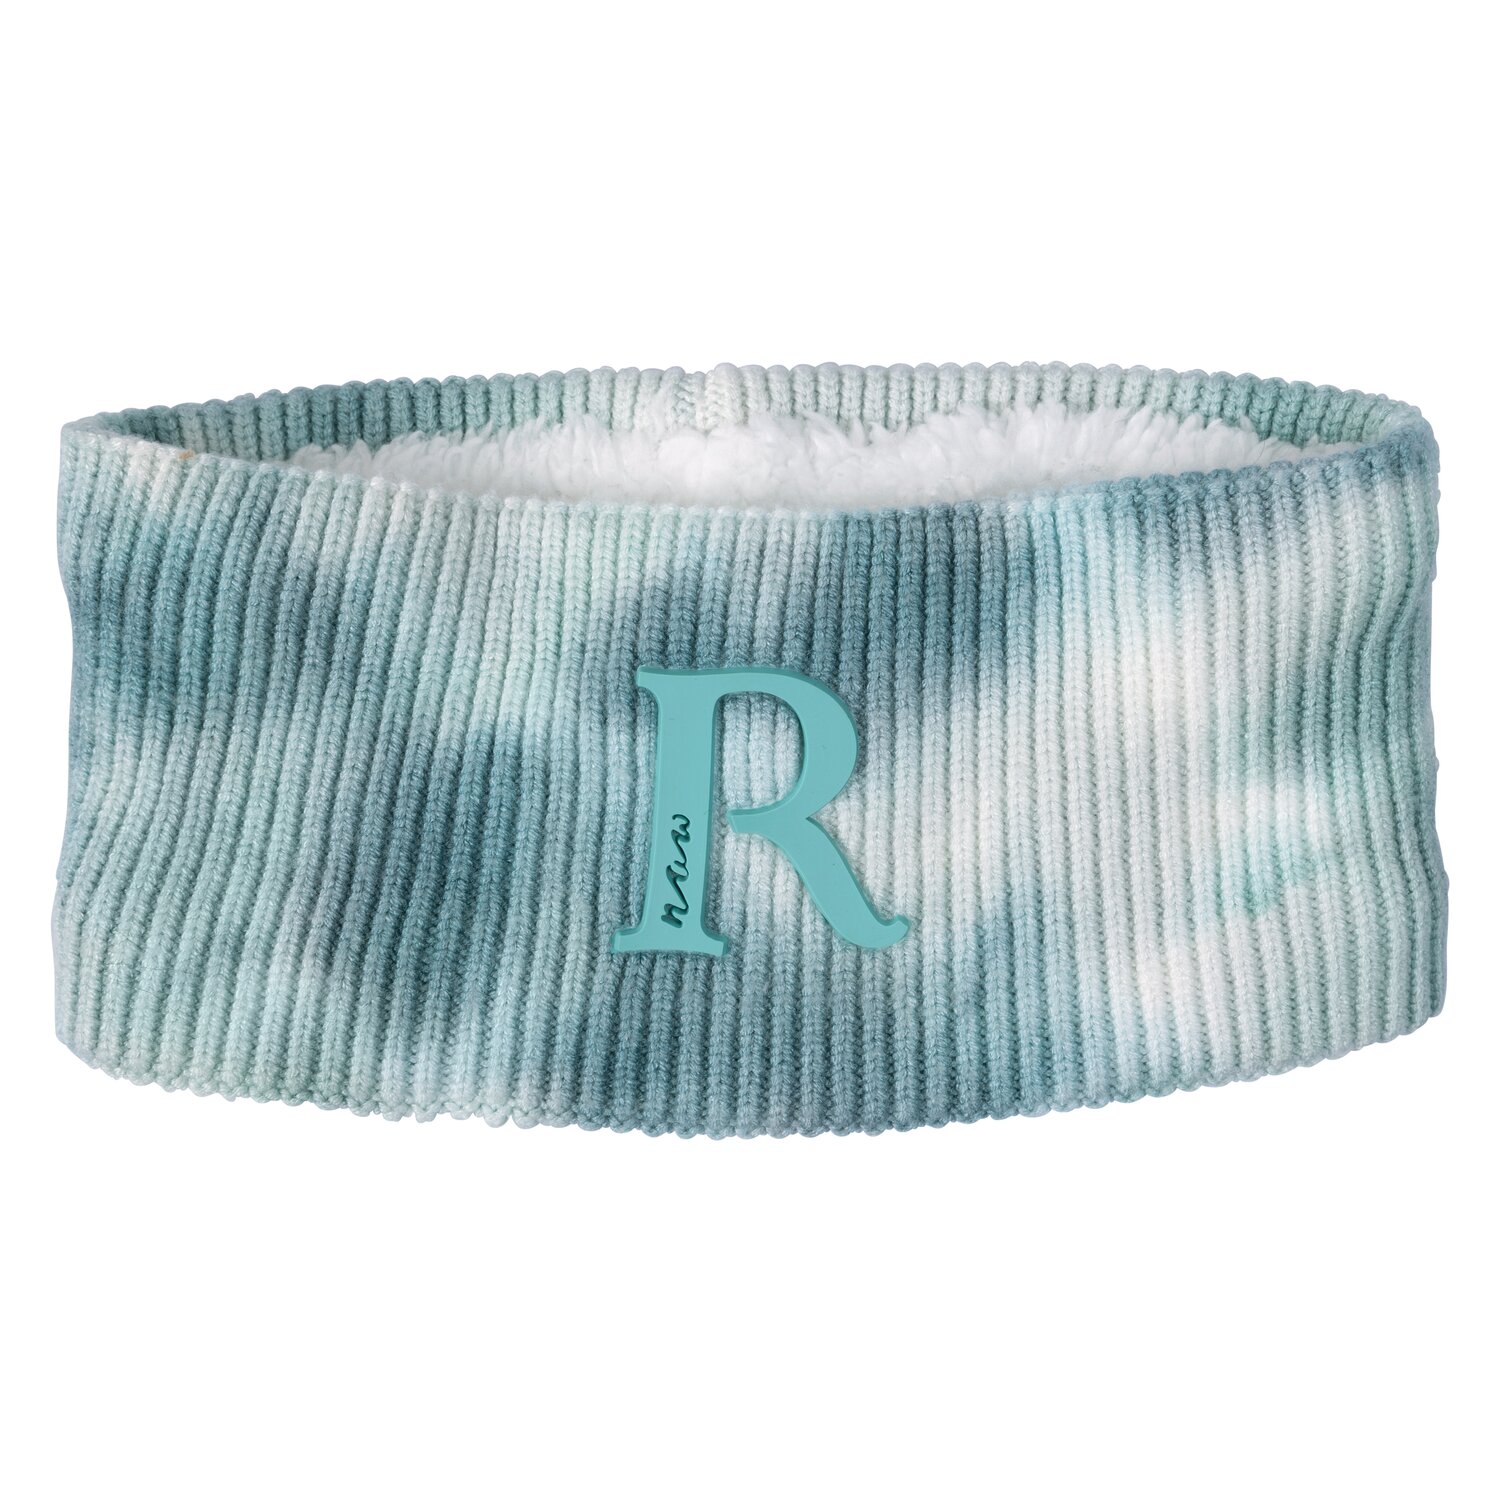 RIDE now Stirnband im Batikdesign iced blue | Einheitsgröße